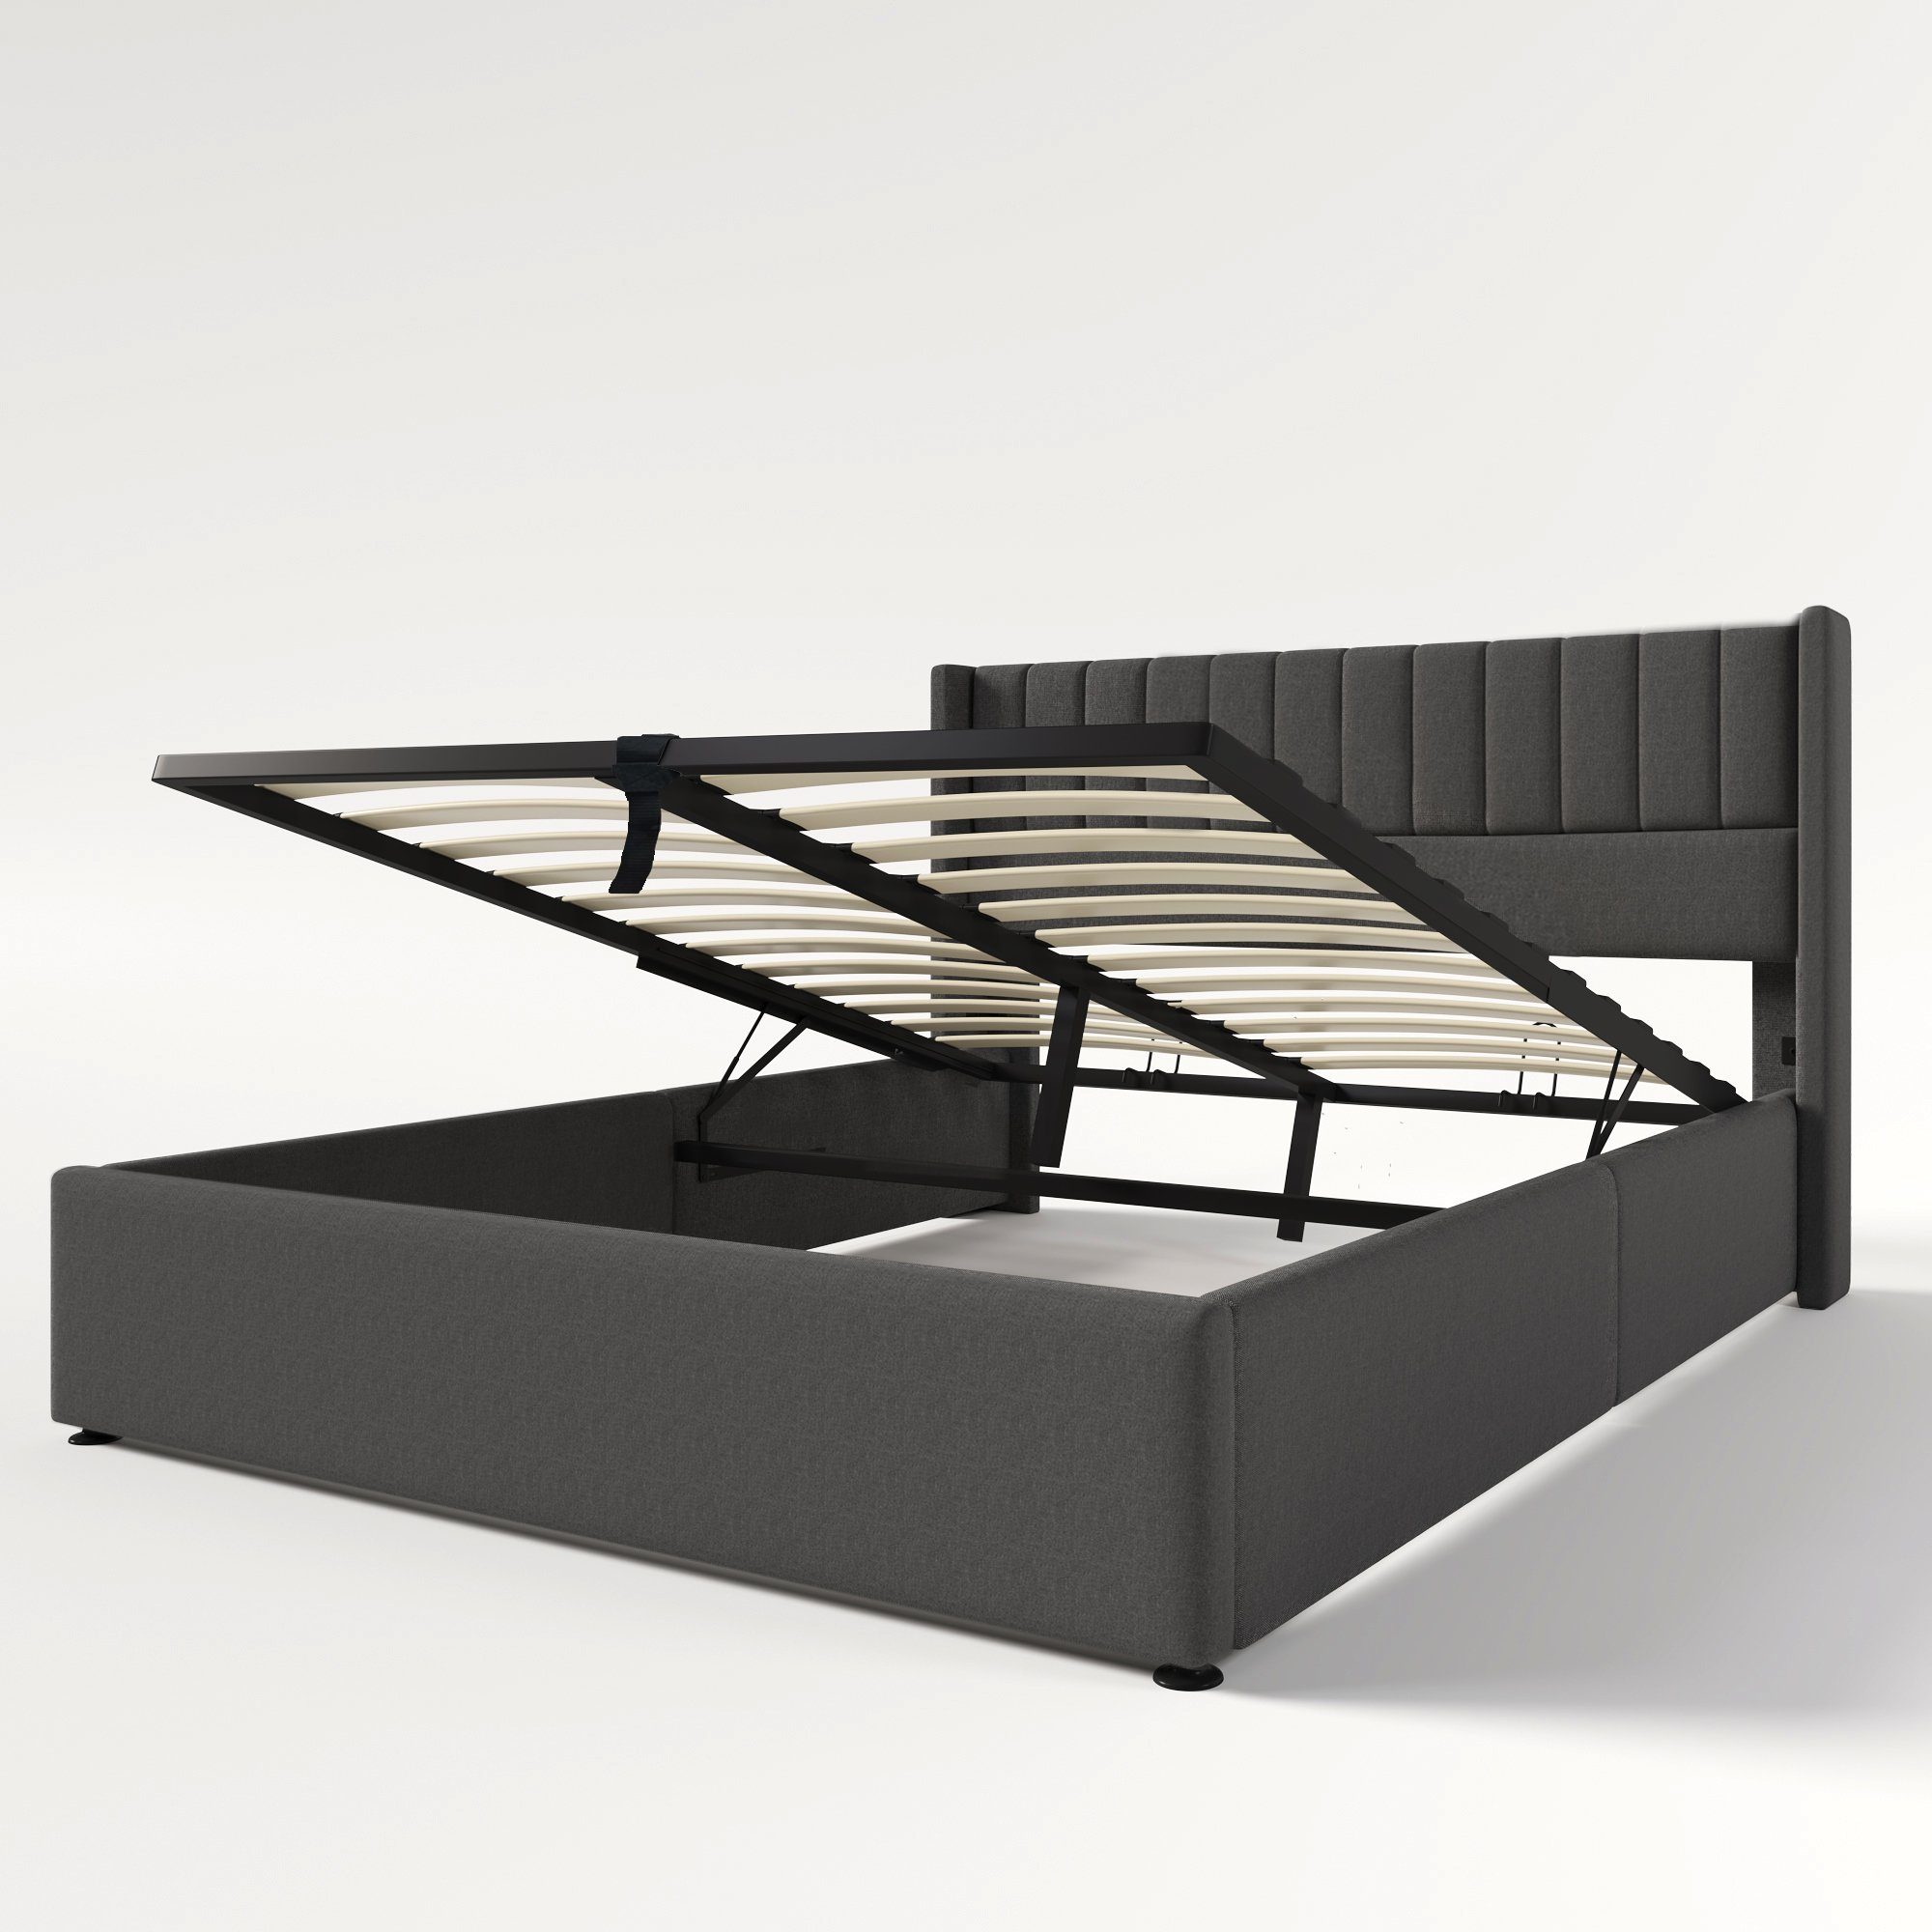 Beige/Grau, Bett Doppelbett unter Leinen mit Stauraum Polsterbett Gotagee dem Polsterbett Stauraum+Lattenrost